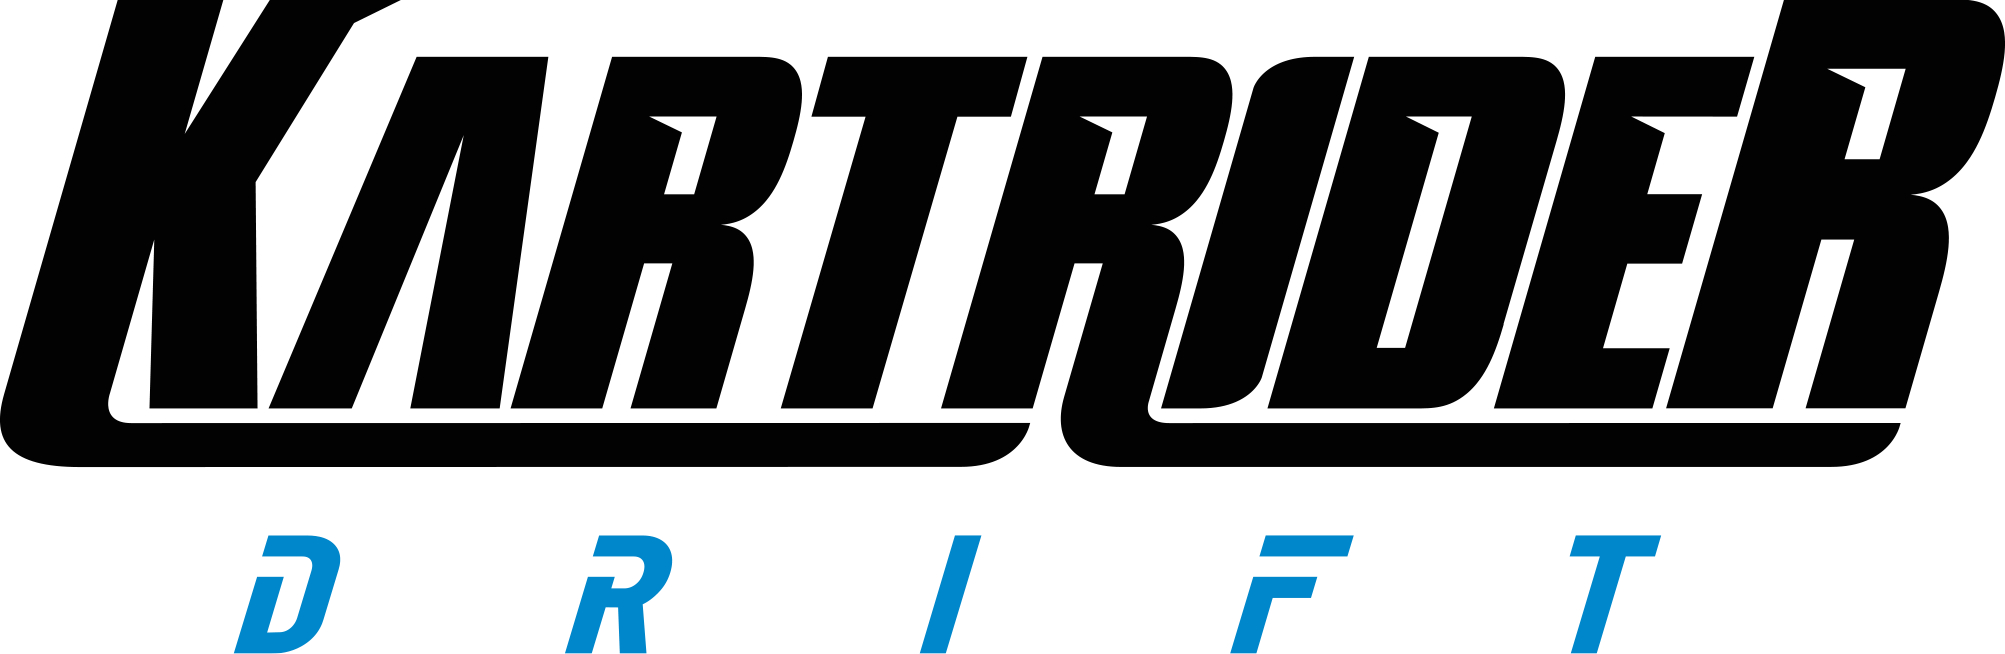 KartRider: Drift – primeira temporada chega ao PlayStation e Xbox com duas  colaborações exclusivas